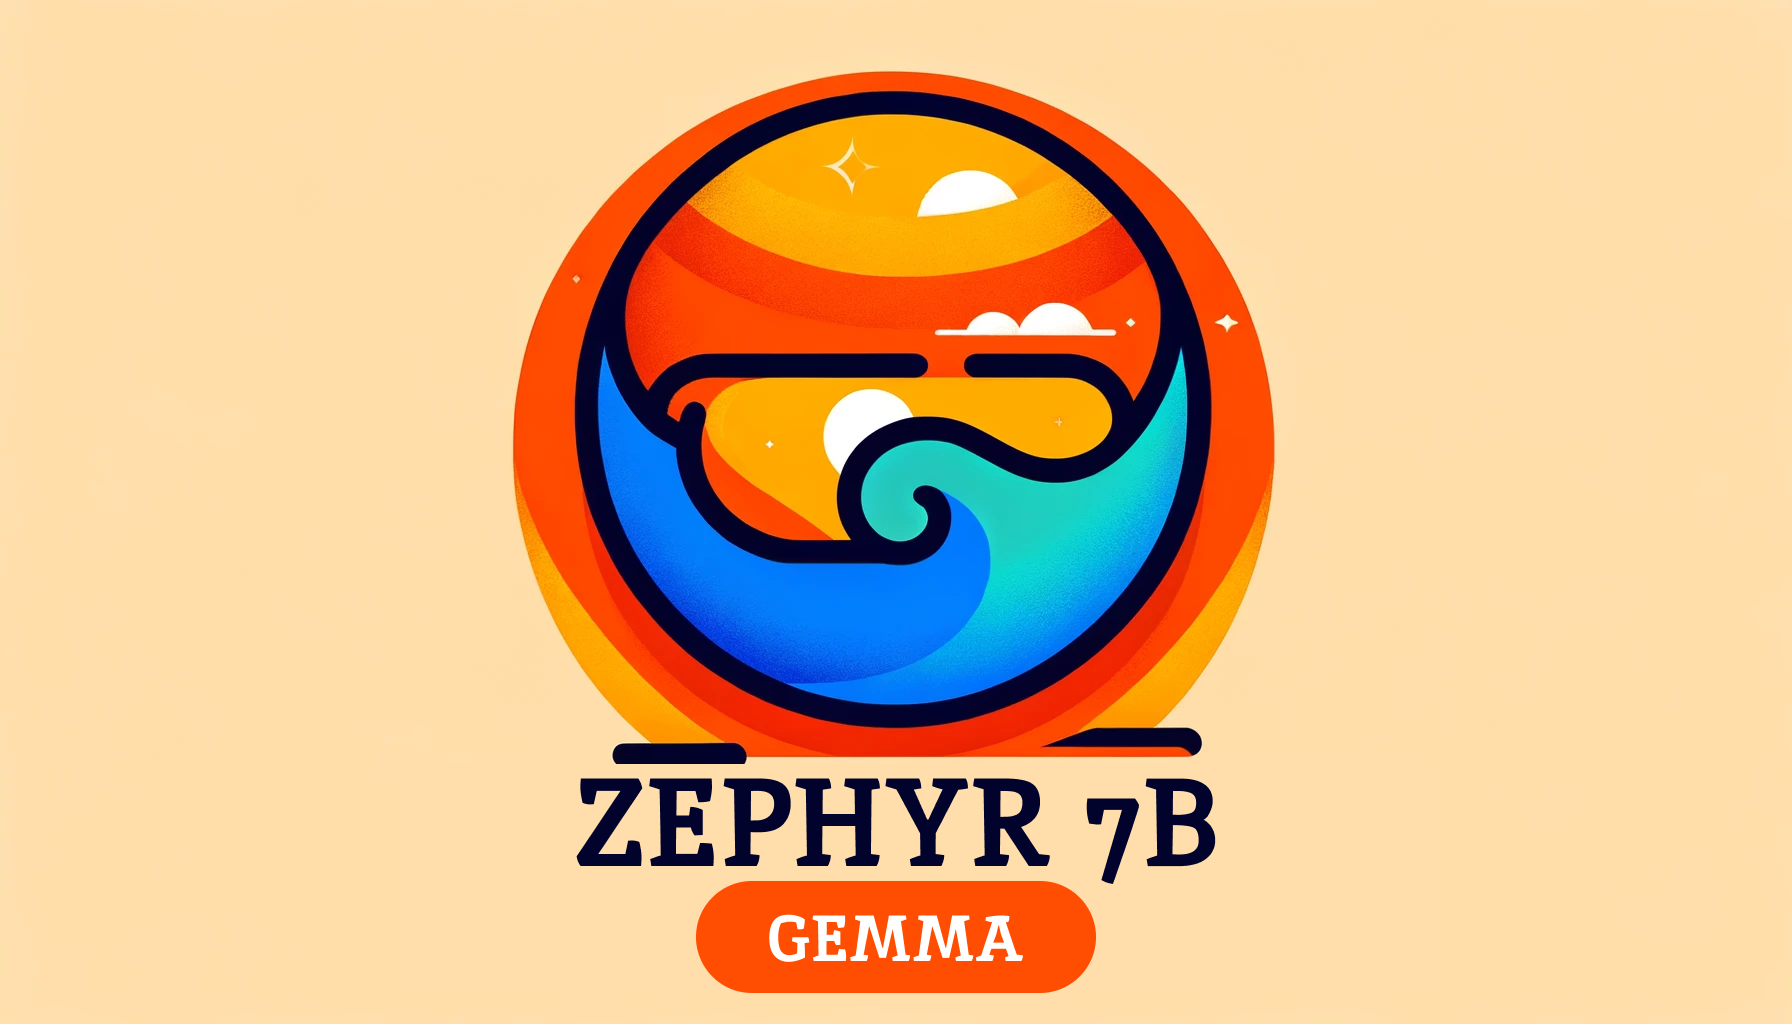 Zephyr 7B Gemma Logo